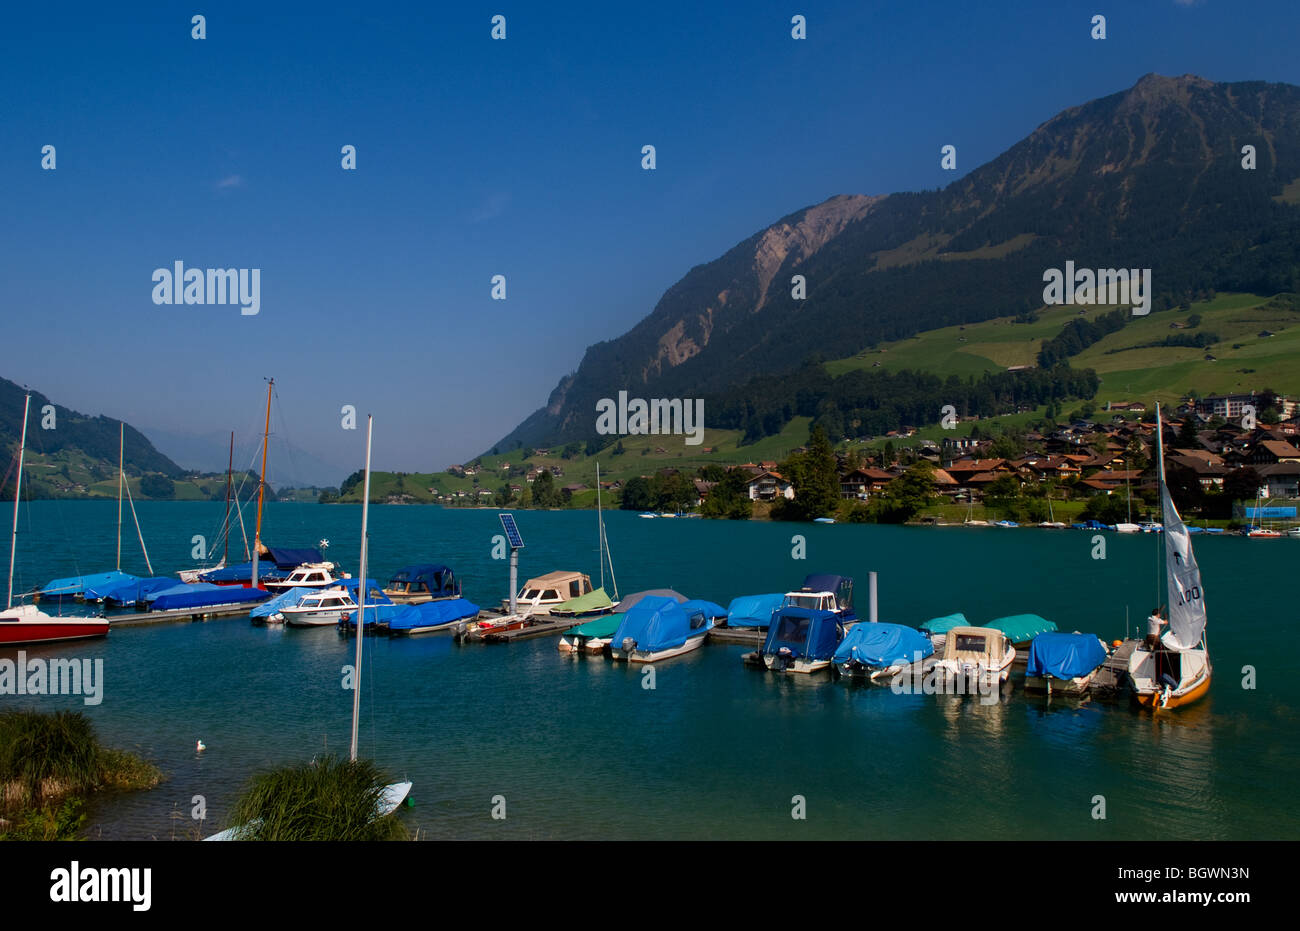 Boats on lake in beautiful Swiss Alps in Brunig near Interlaken Switzerland Stock Photo